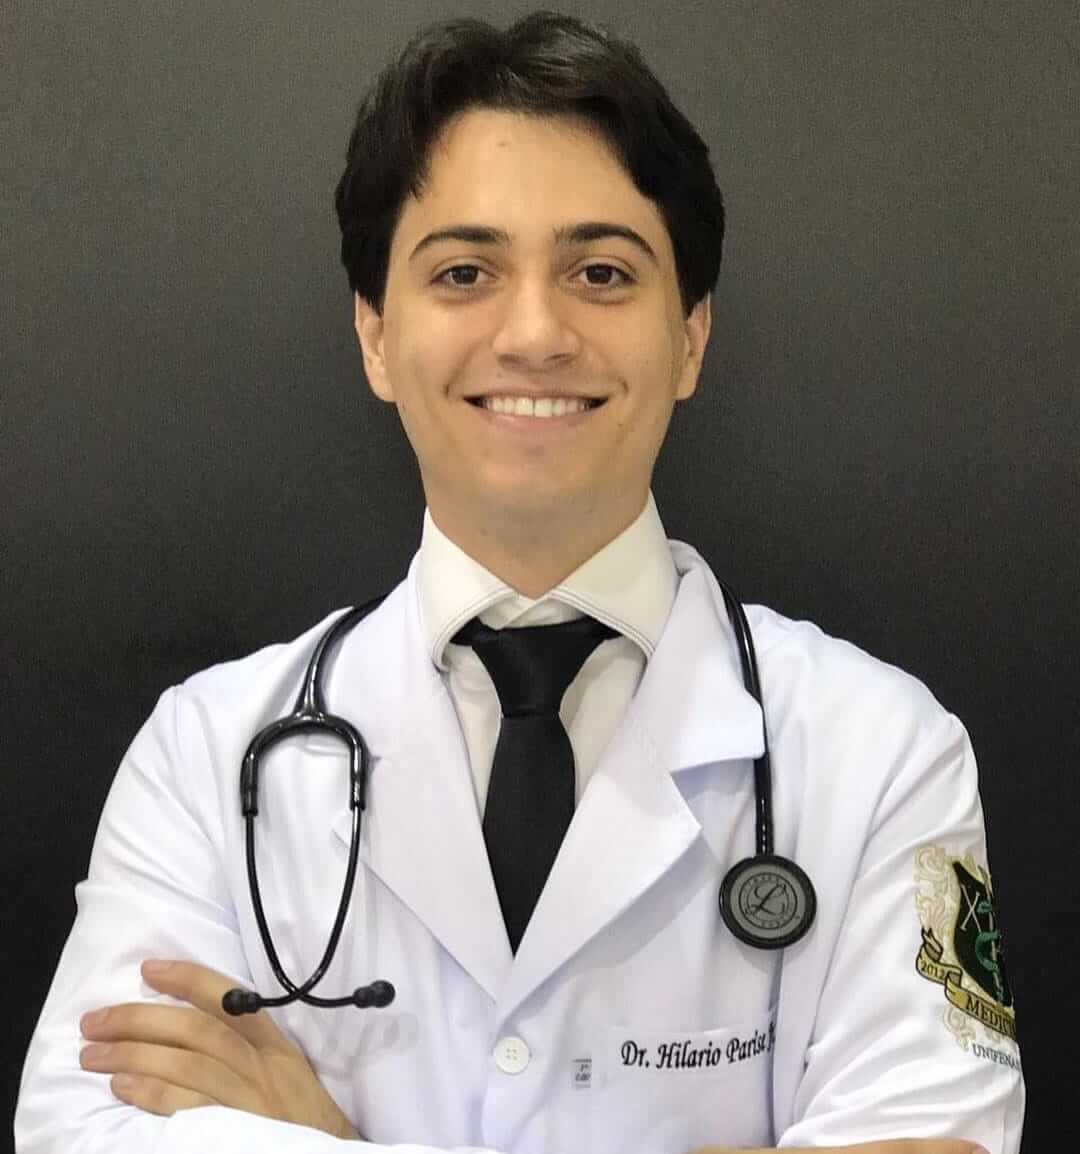 Dr. Hilario Parise Junior